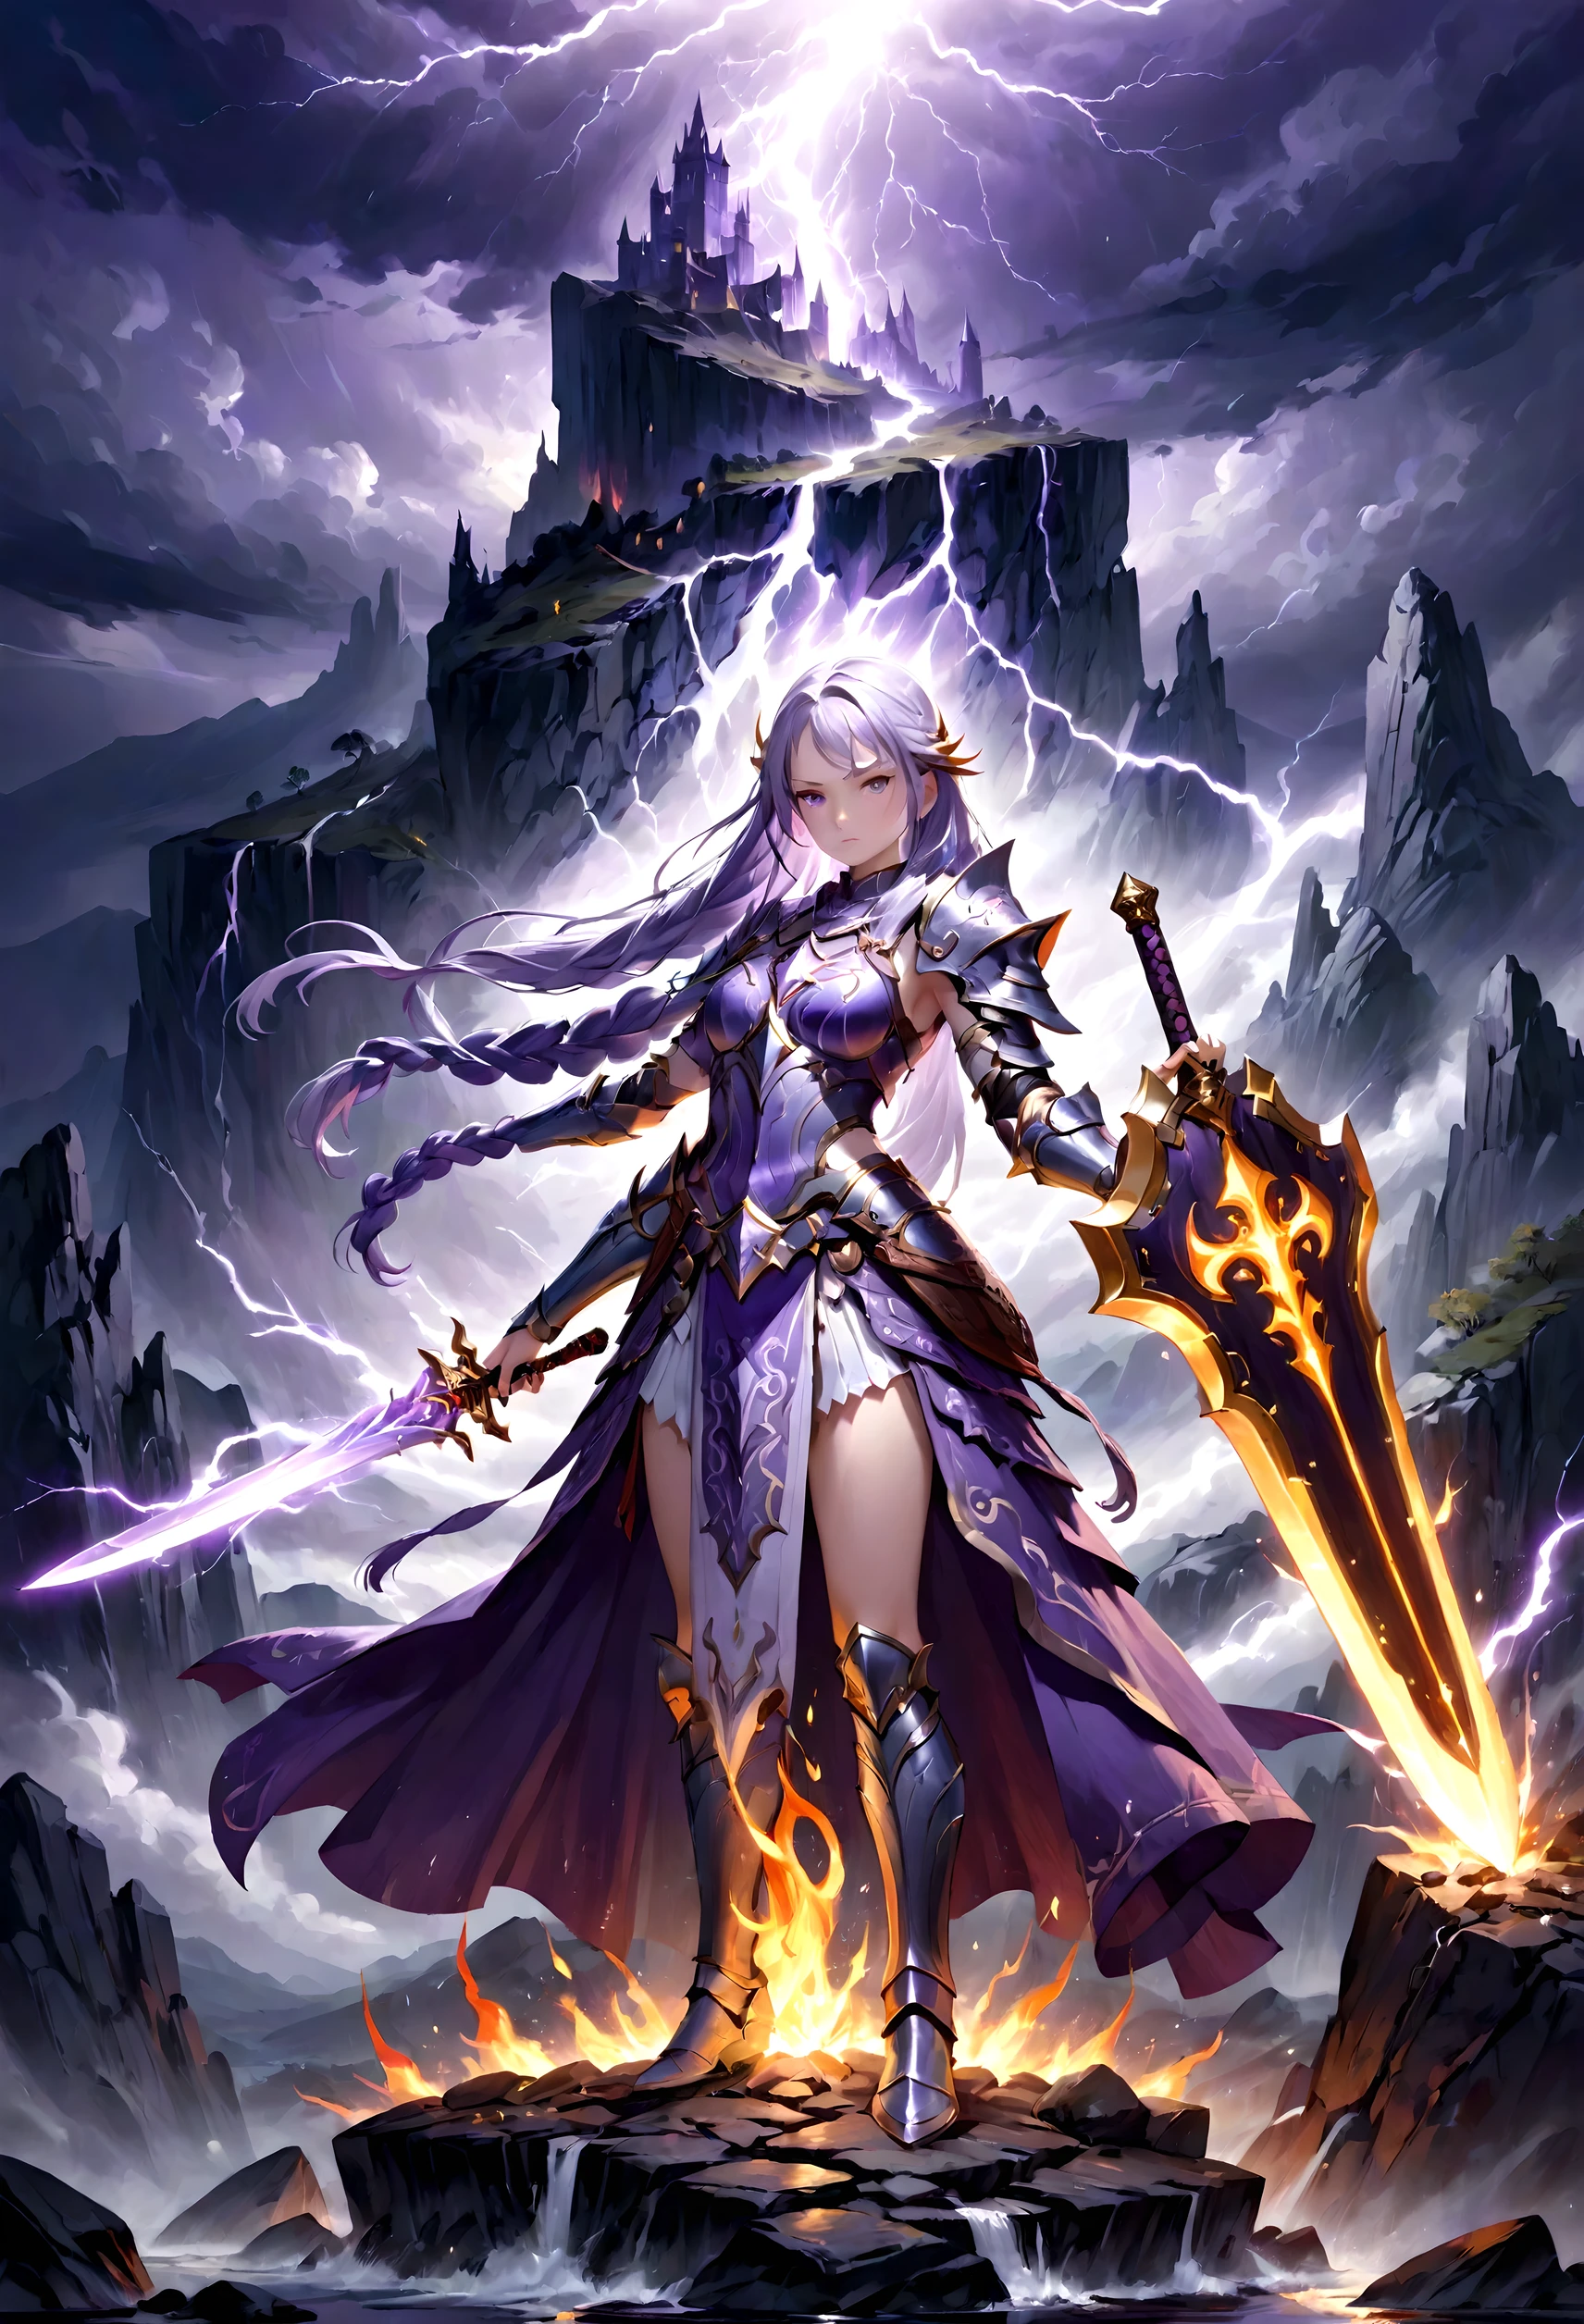 Иллюстрация женщины-воина с зачарованным пламенем волшебным мечом, сложный детальный меч, длинные волосы фиолетово-белого градиентного цвета, свободные косы, броня и щит со светодиодом, плавные мазки, очень подробный, Темная Фэнтези, гроза, скалистый пейзаж